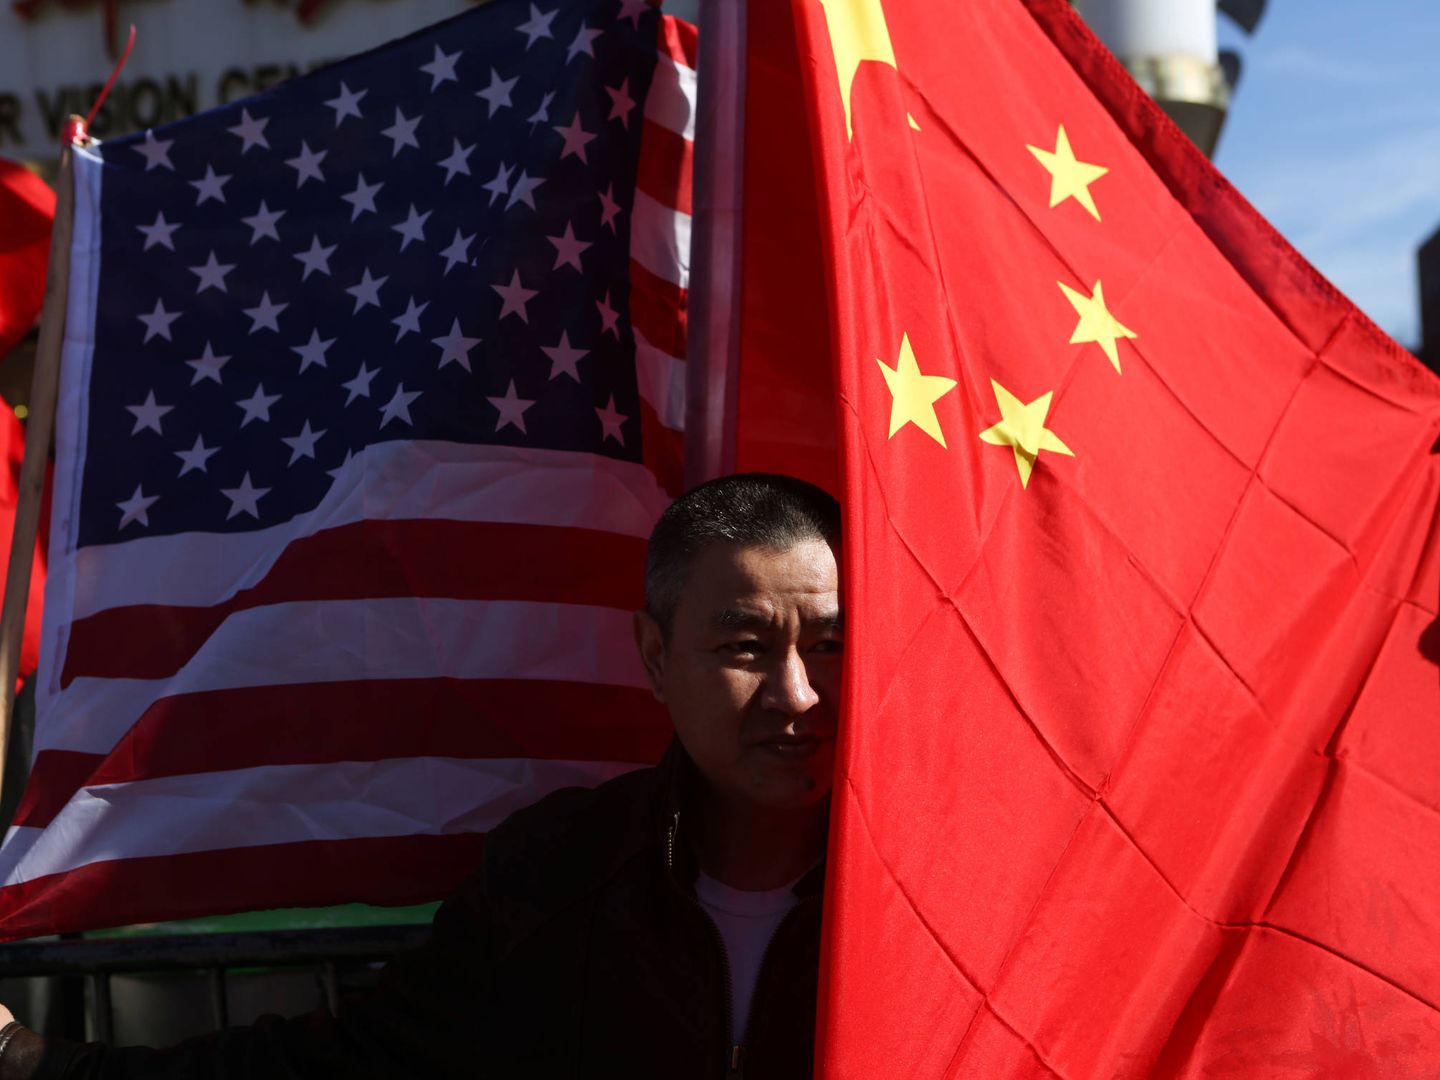 Un hombre posa con una bandera estadounidense y otra china en Queens, Nueva York. (Reuters)